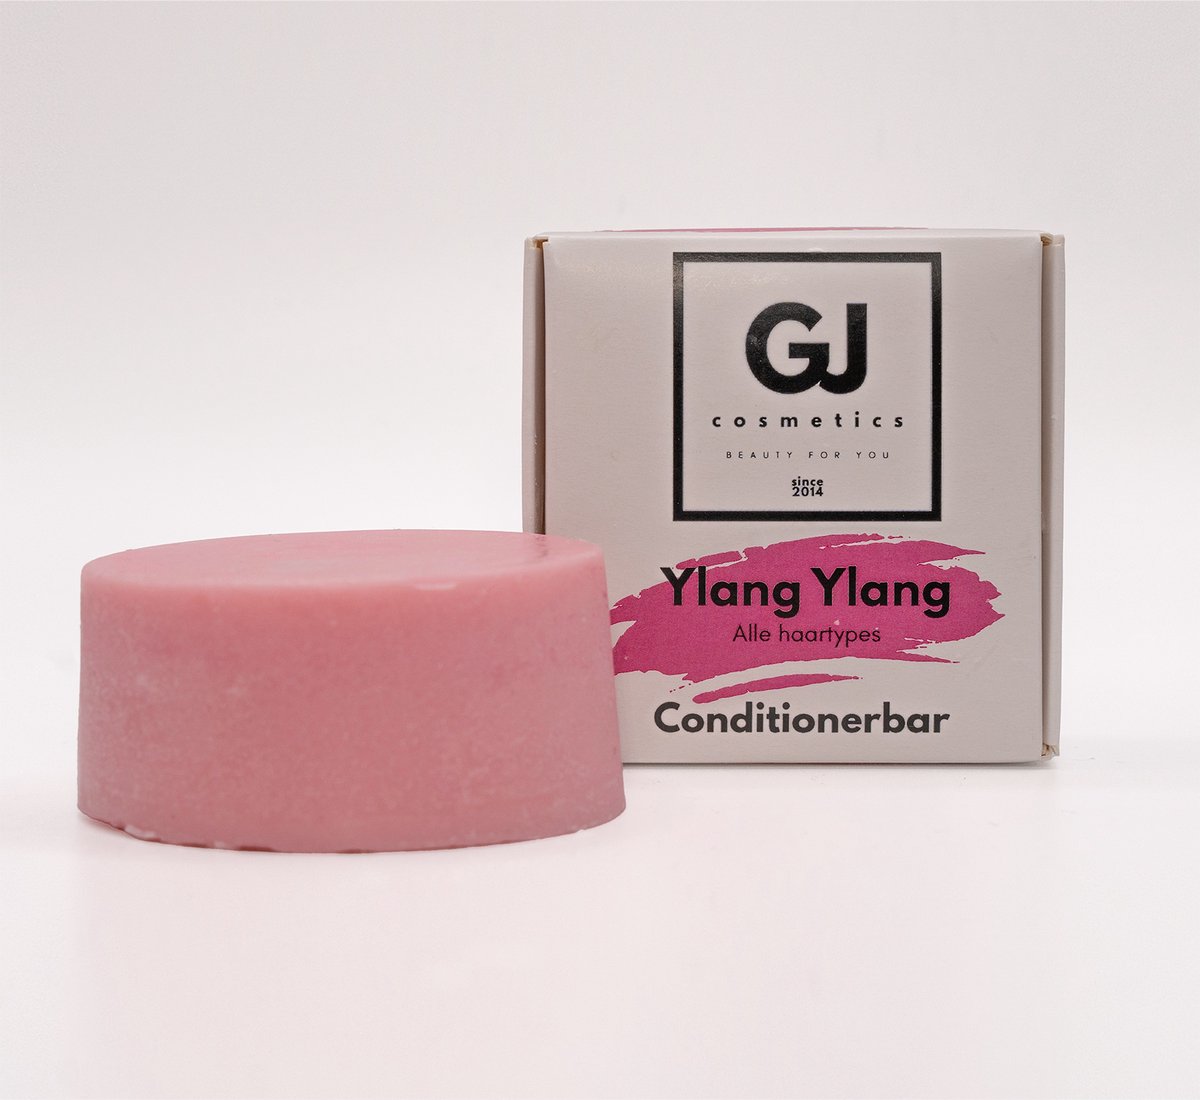 GJ Cosmetics Conditionerbar Ylang Ylang